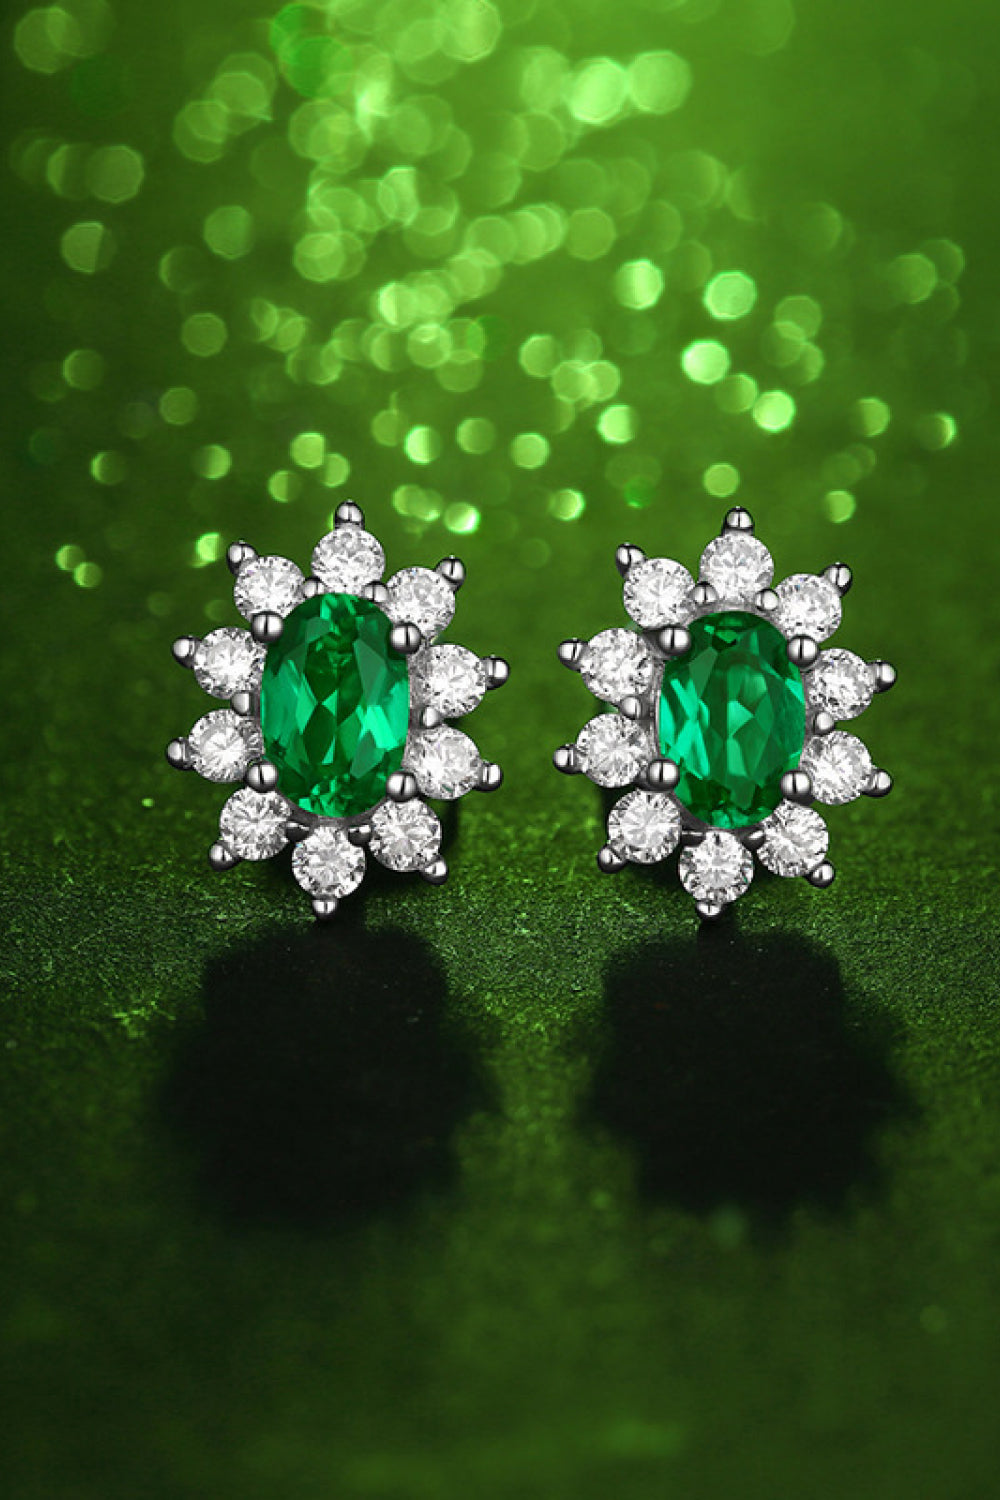 1 Carat Emerald Stud Earrings